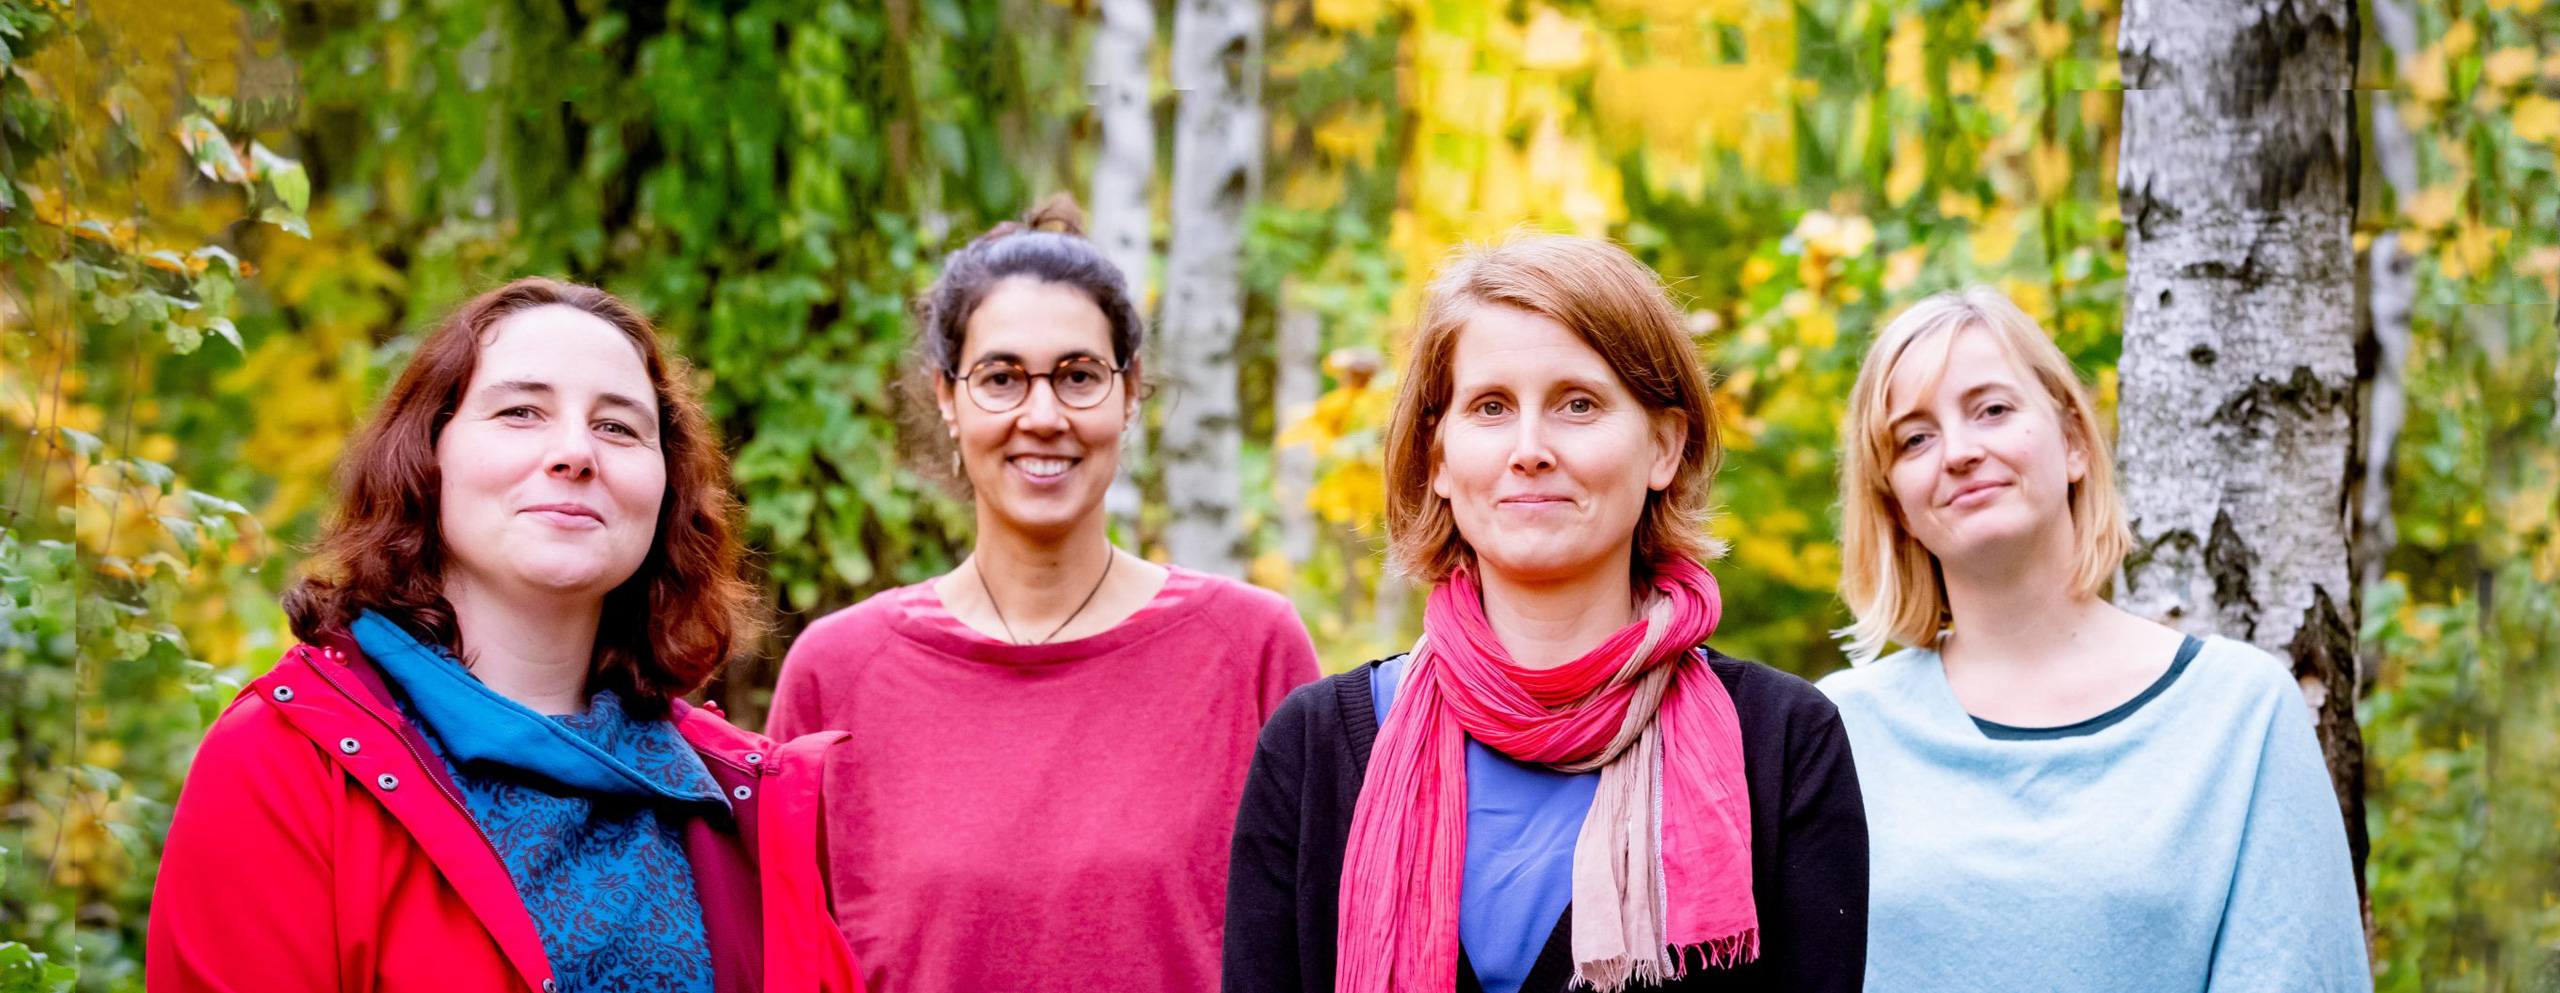 Das Ebe_Team mit Jane Morgenthal, Andrea Häfele, Bettina Land und Franzisca Teske (von links) draußen vor grünen und gelben Blättern und Bäumen